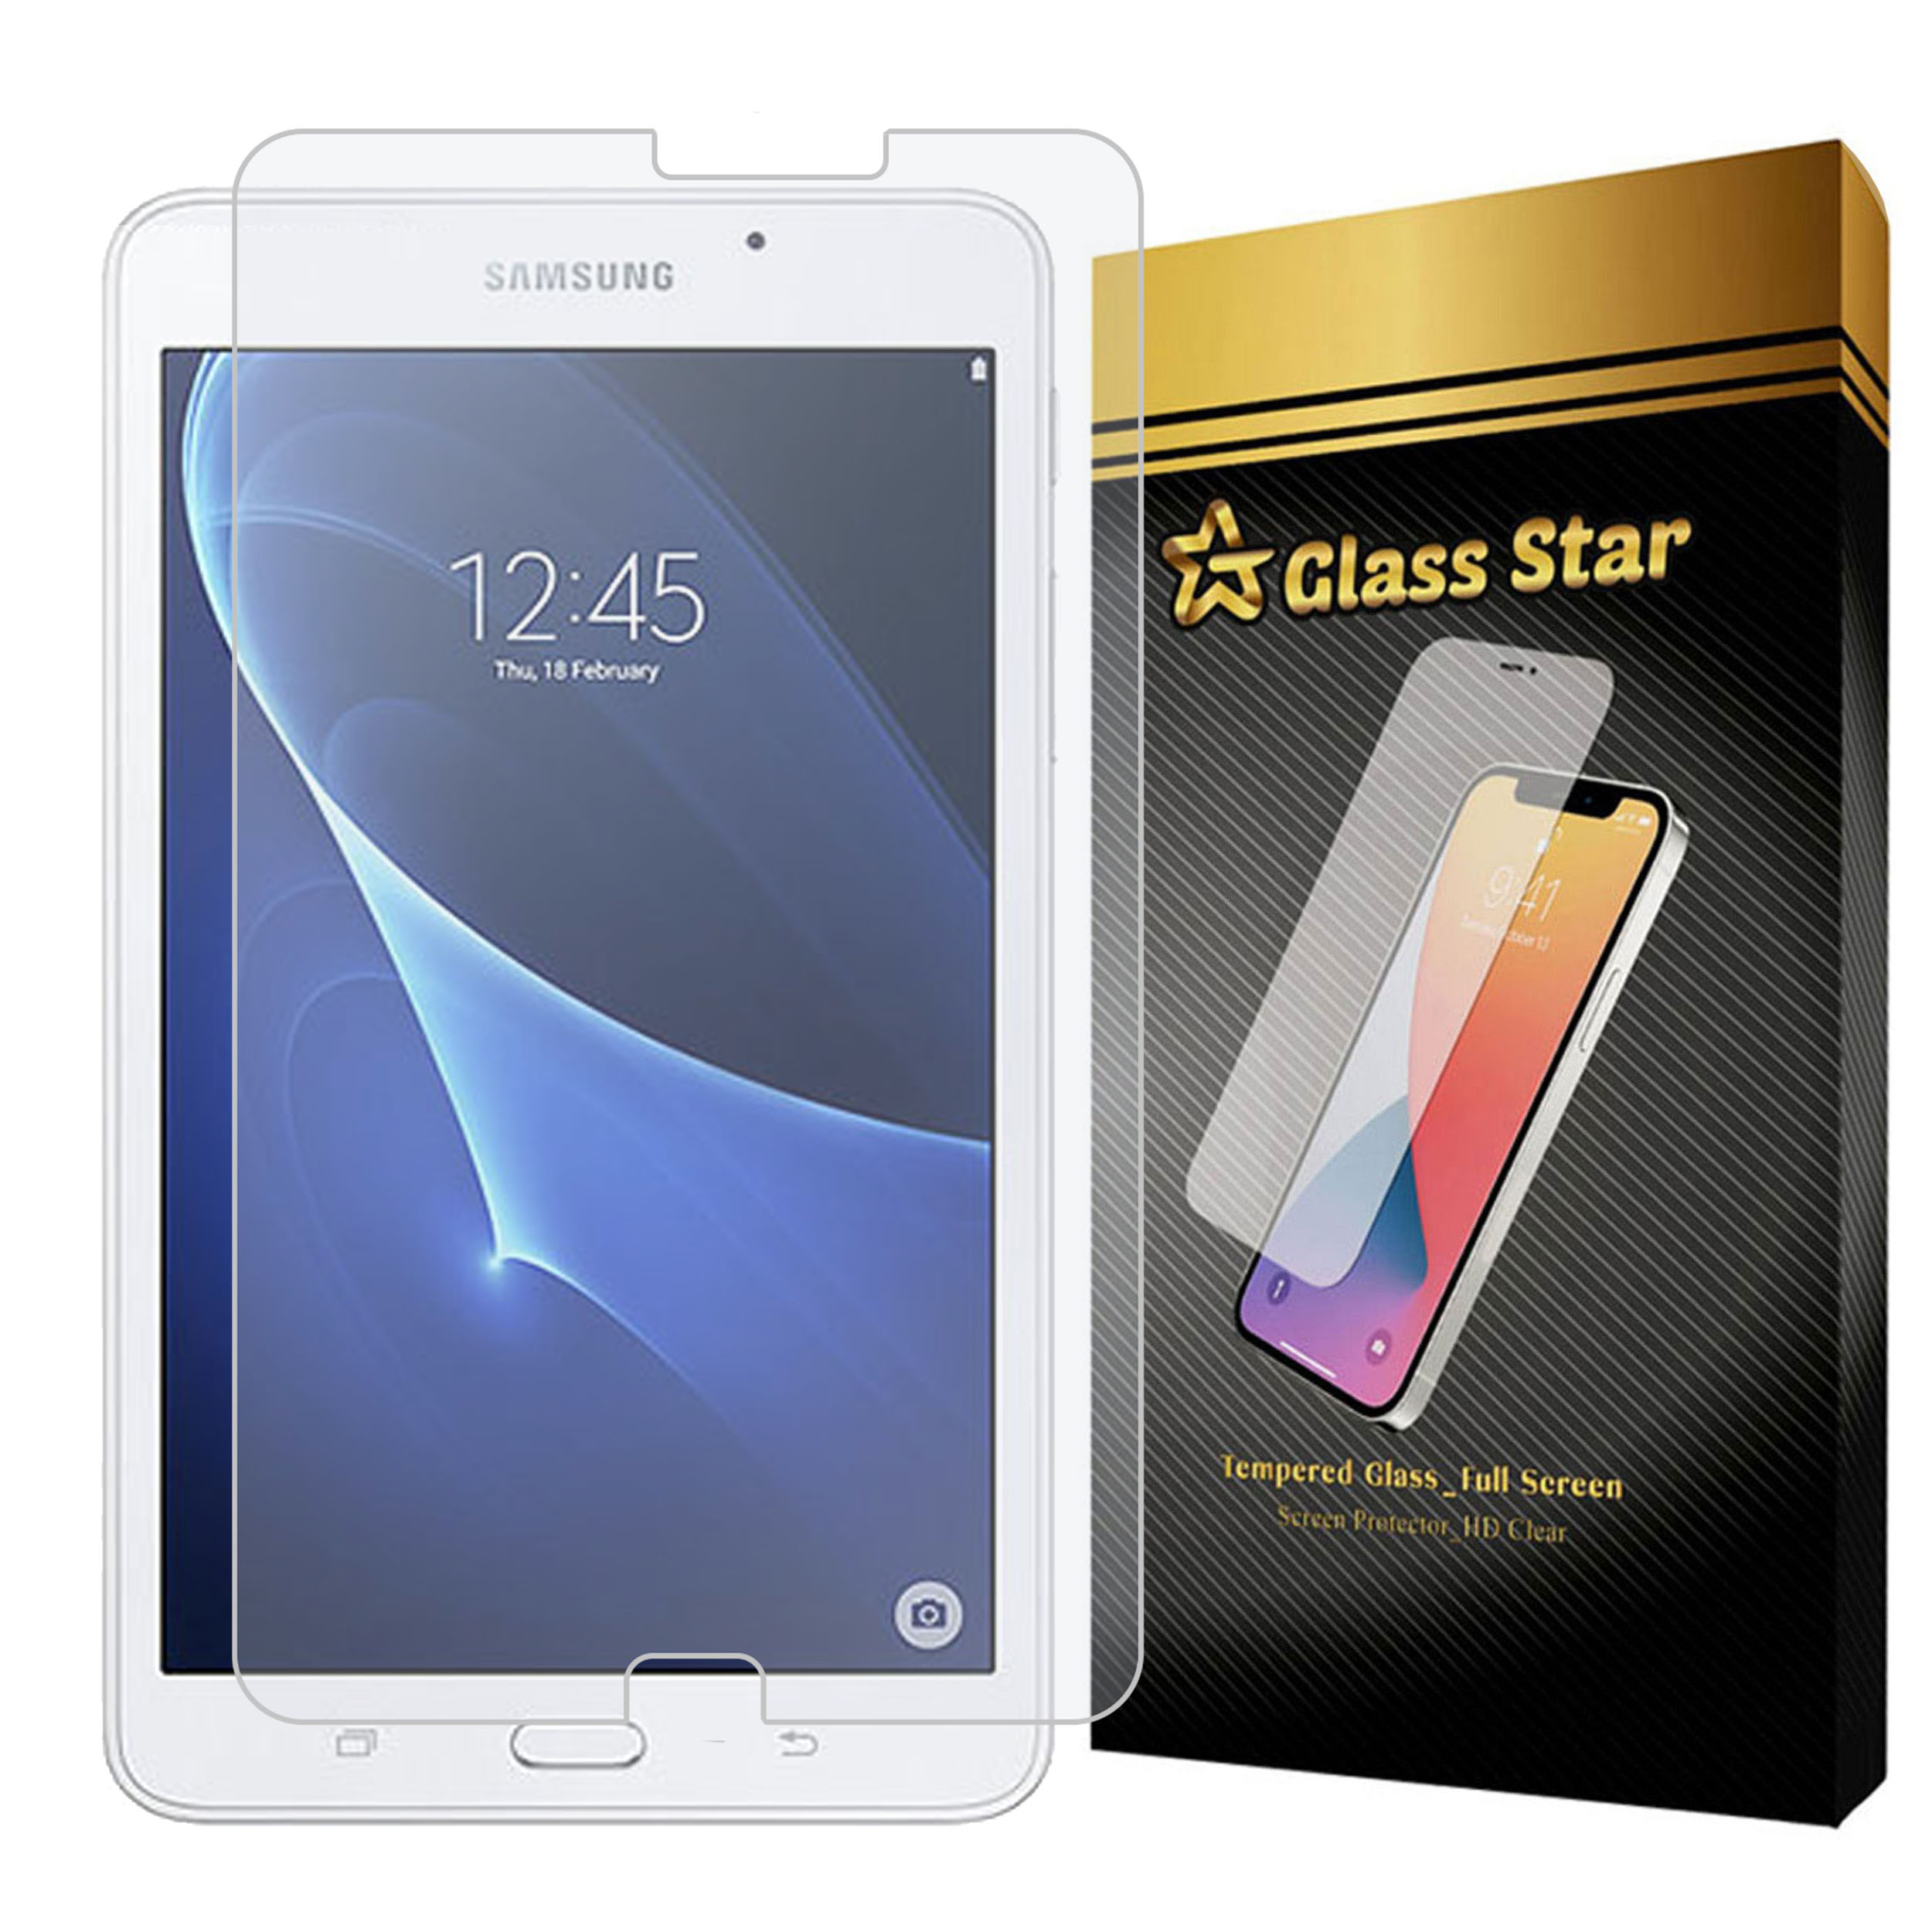 محافظ صفحه نمایش گلس استار مدل TABLETS7 مناسب برای تبلت سامسونگ Galaxy Tab A 7.0 2016 / T280 / T285